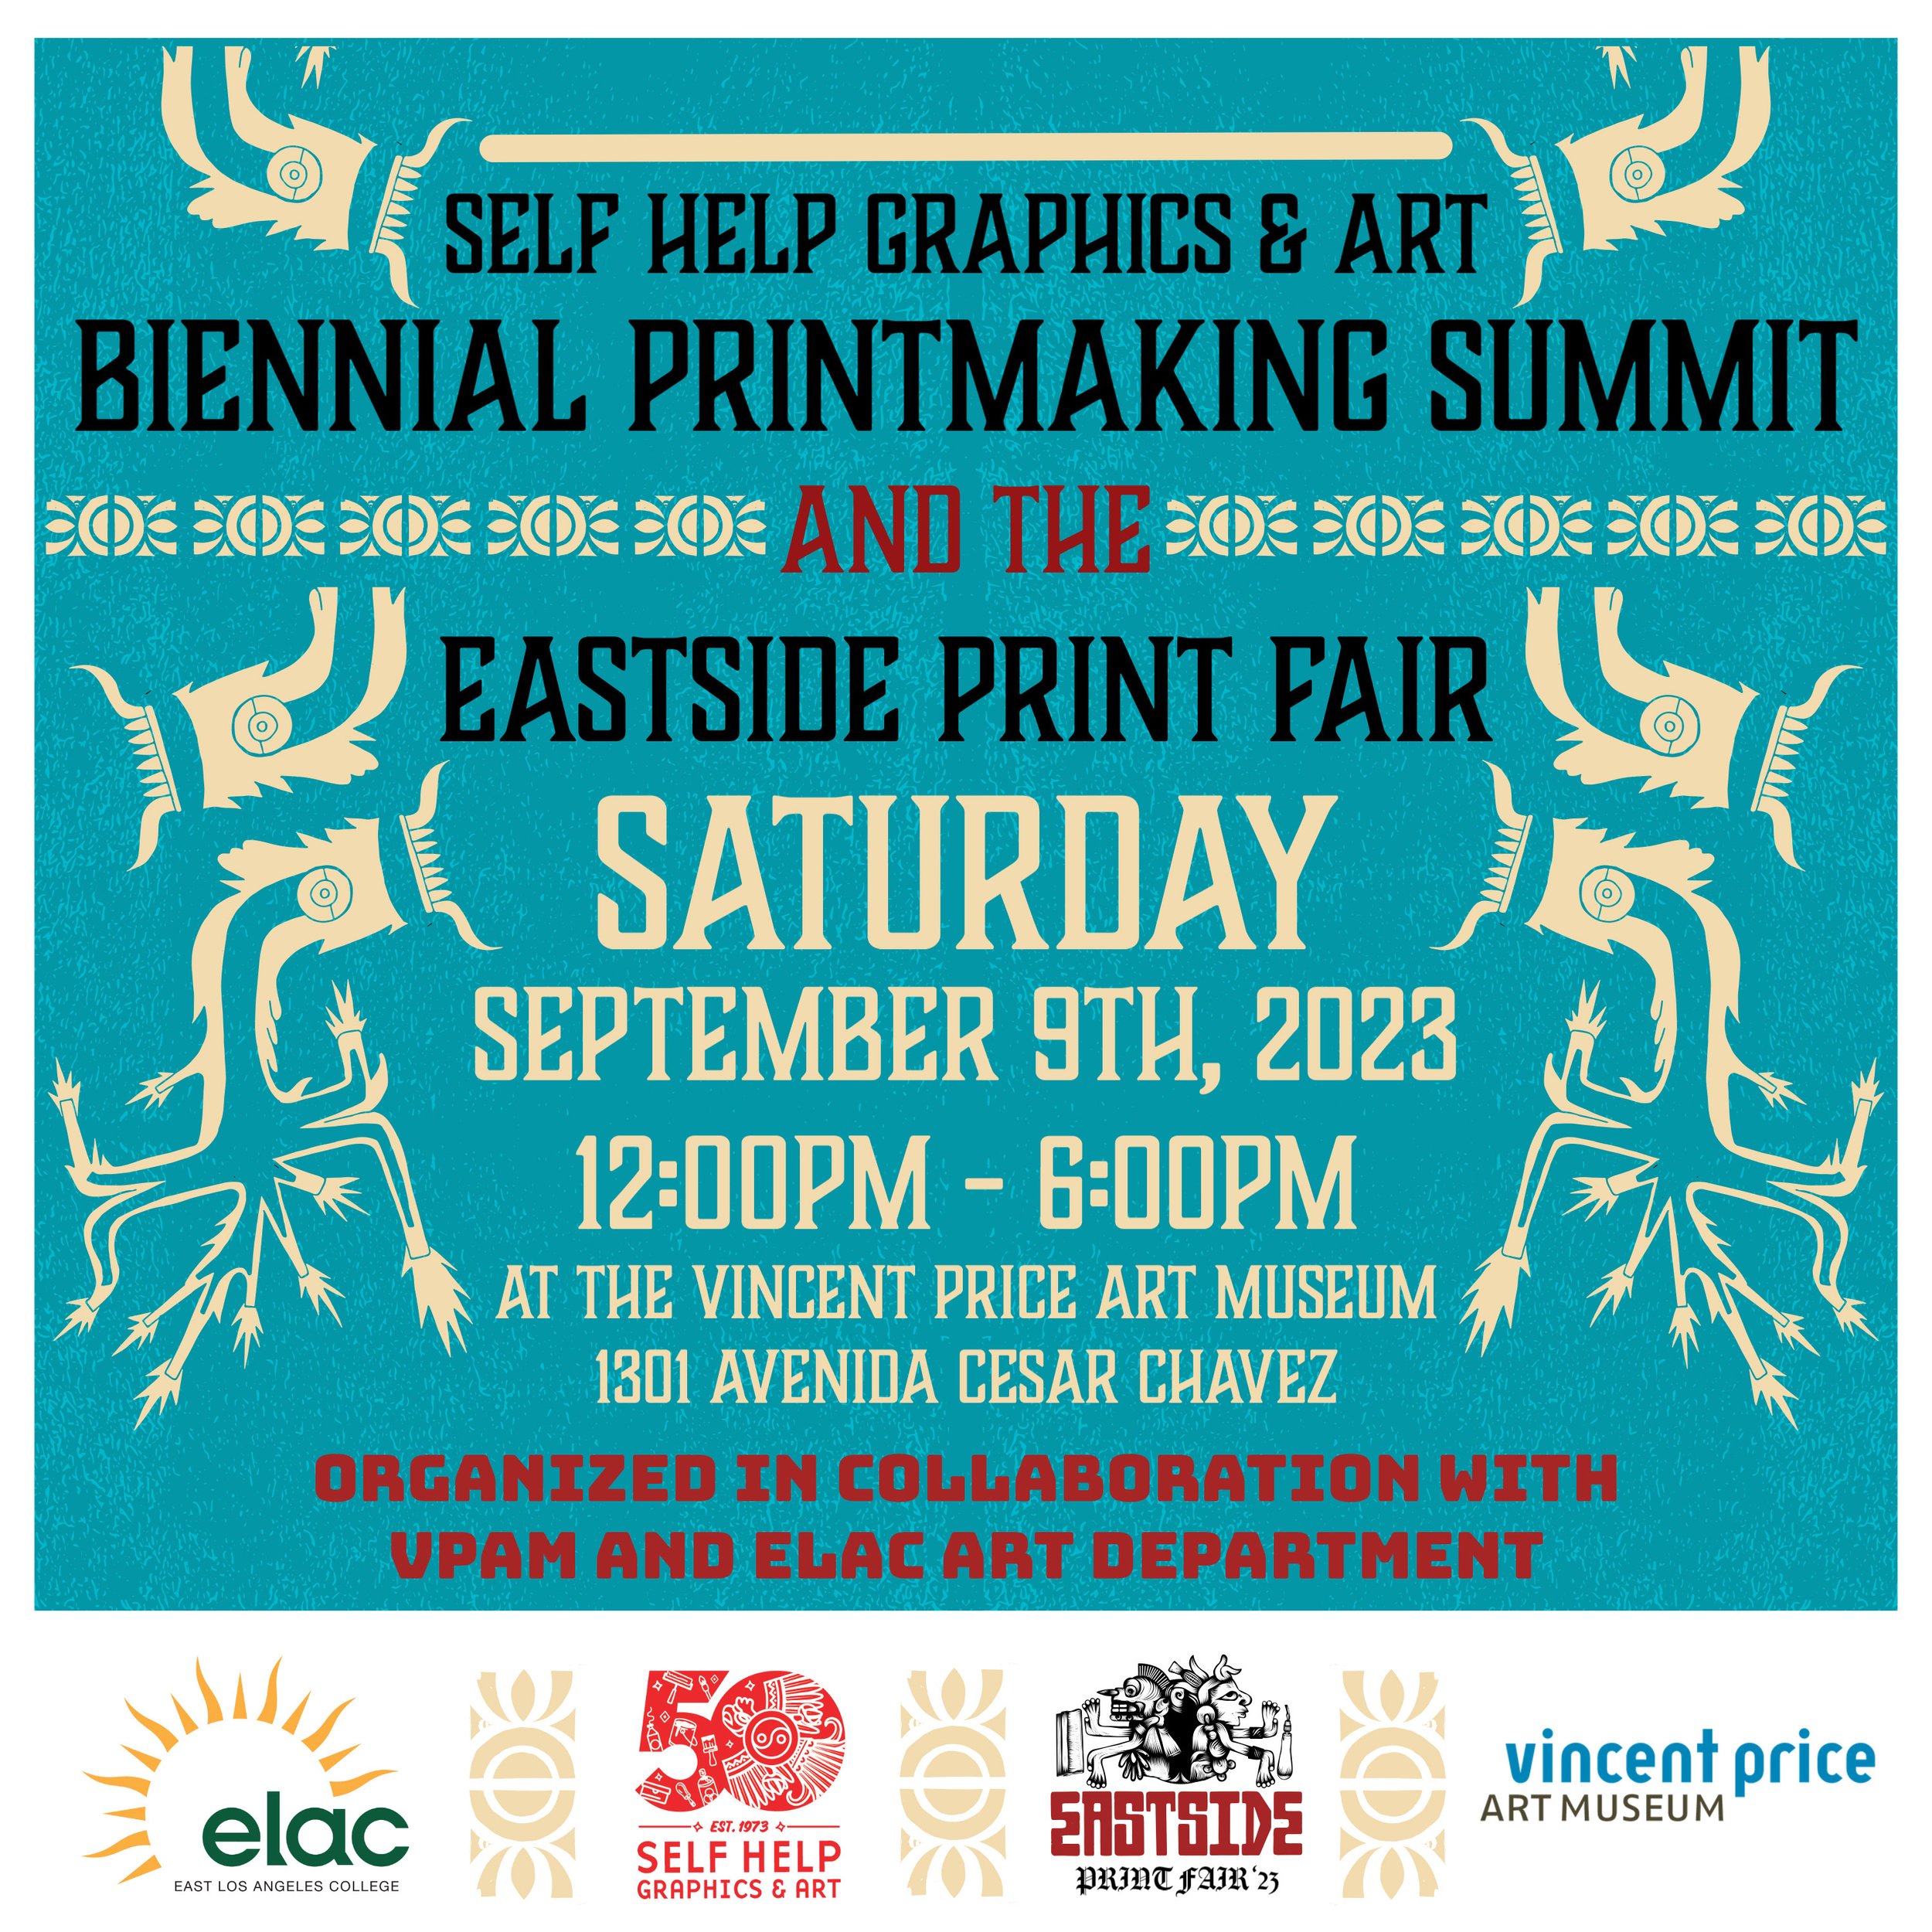 Print Summit_Eastside Print Fair.jpg